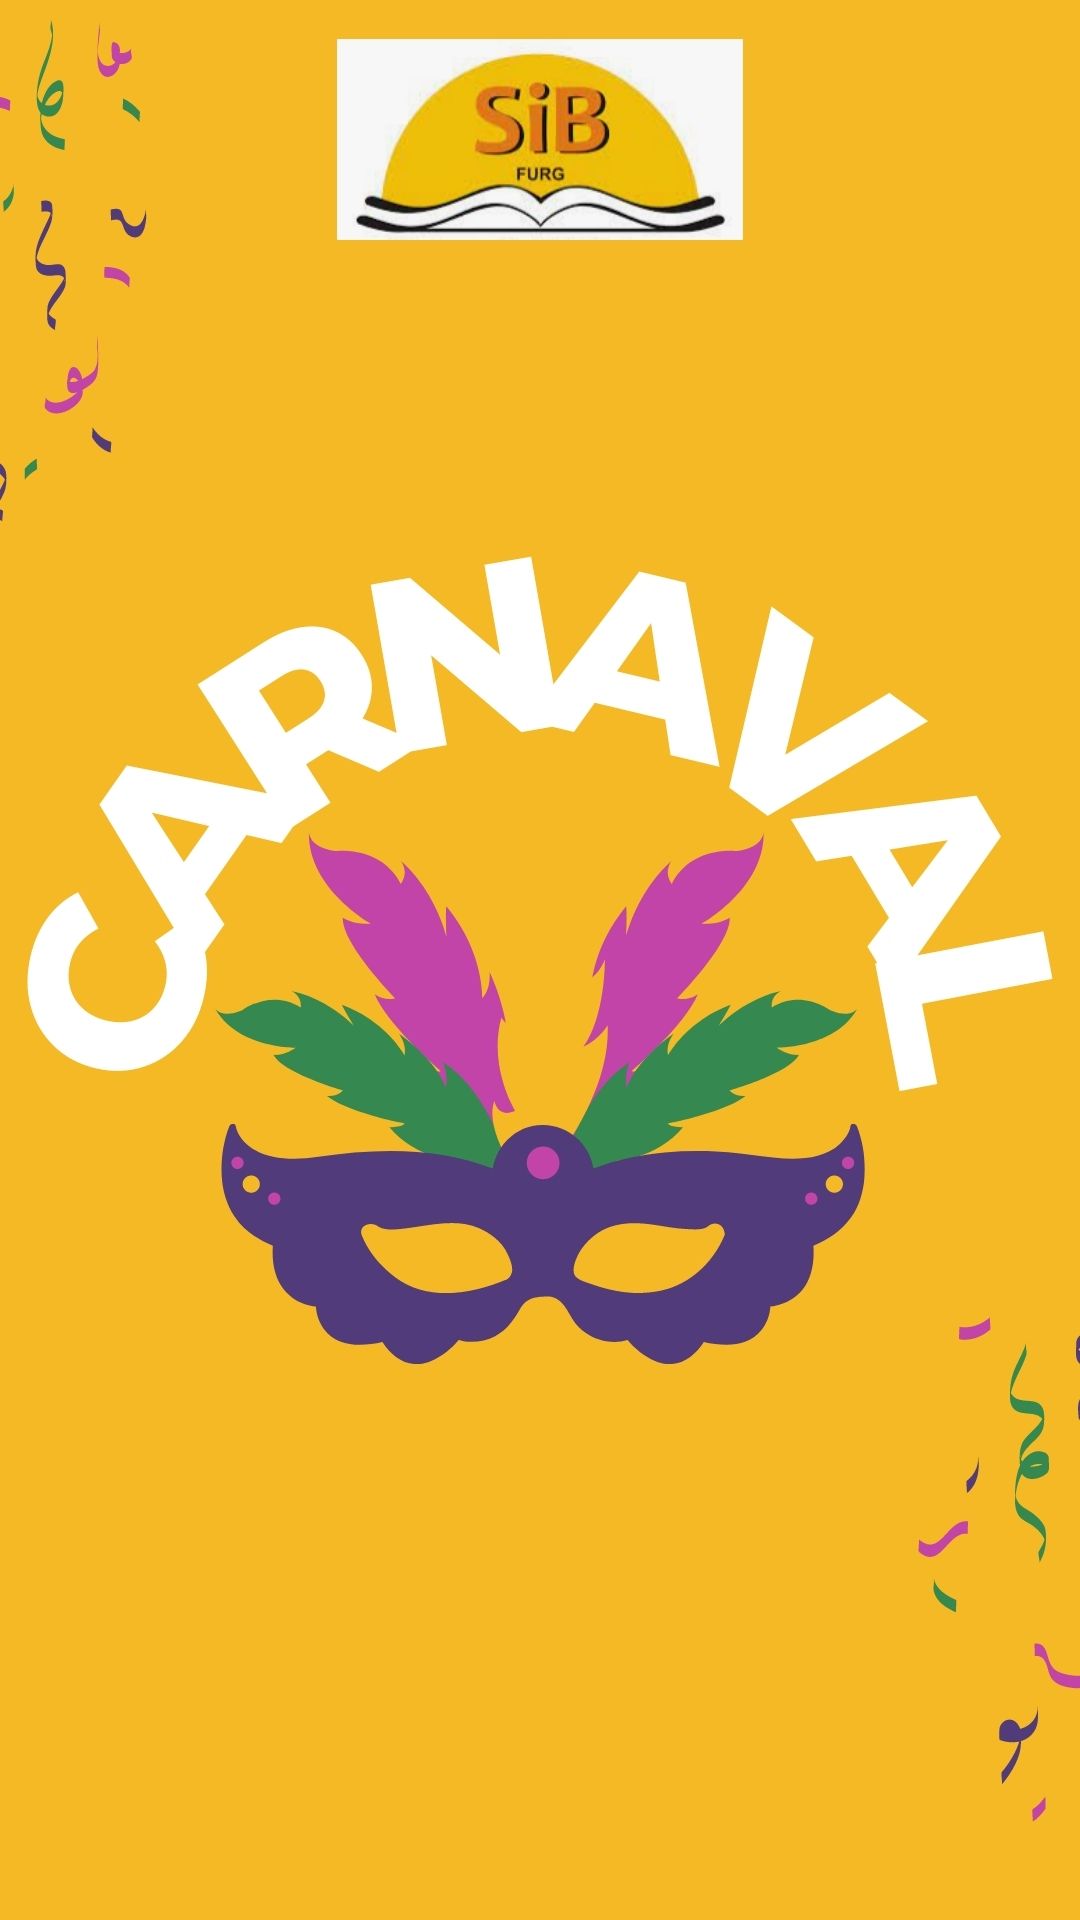 Imagem com fundo amarelo escrito Carnaval e a figura de uma máscara com penas coloridas e o logo do SIB.